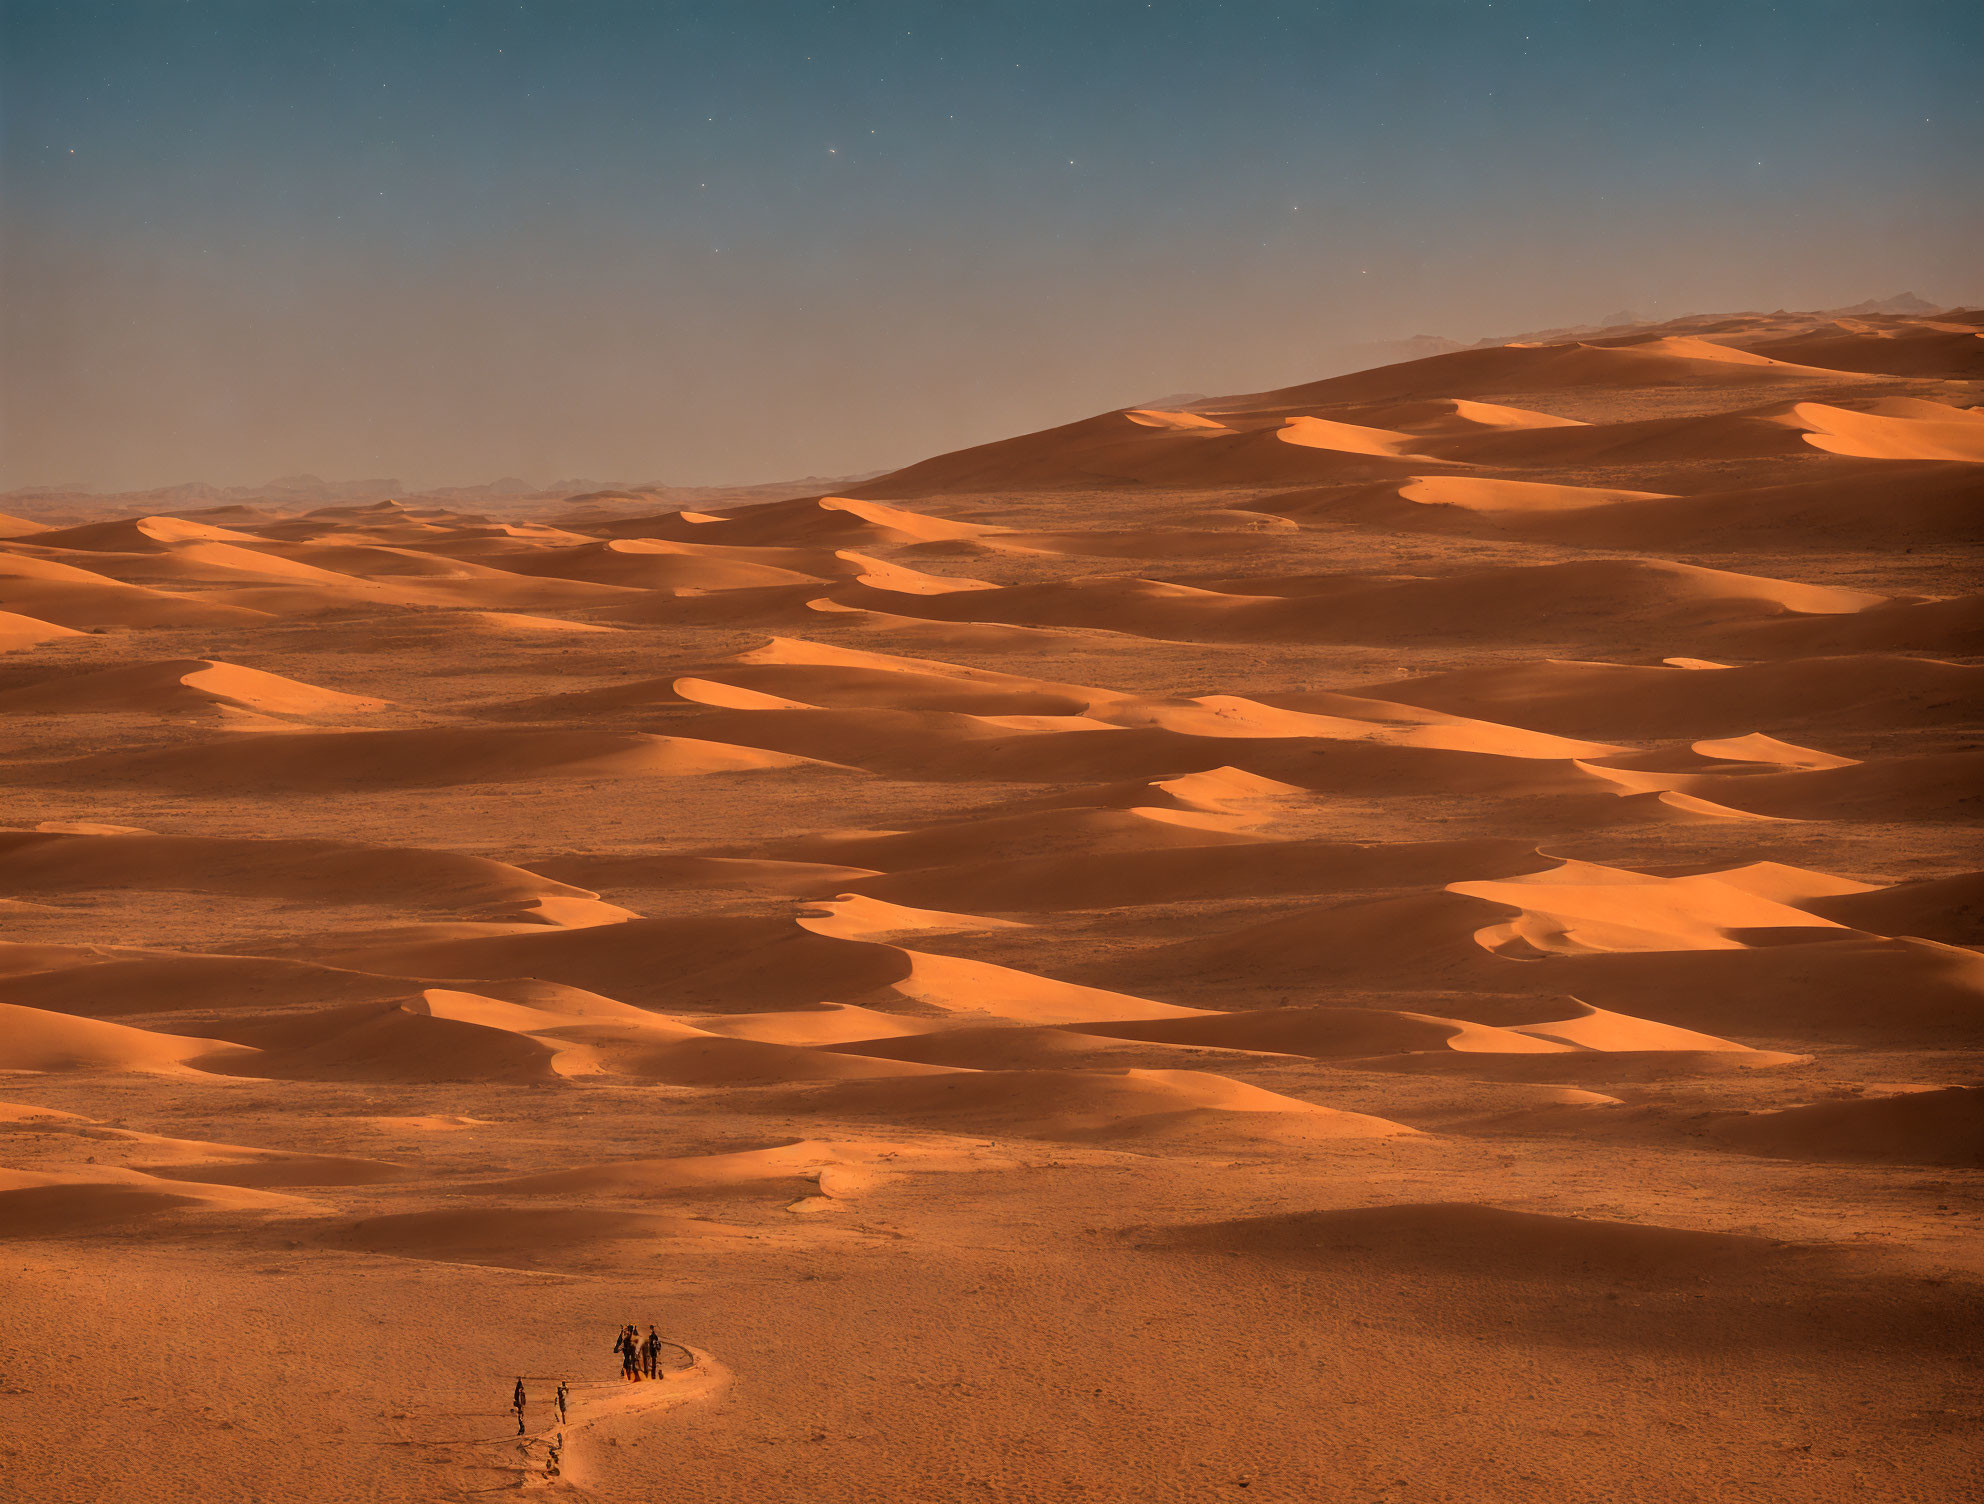 Distant Dunes